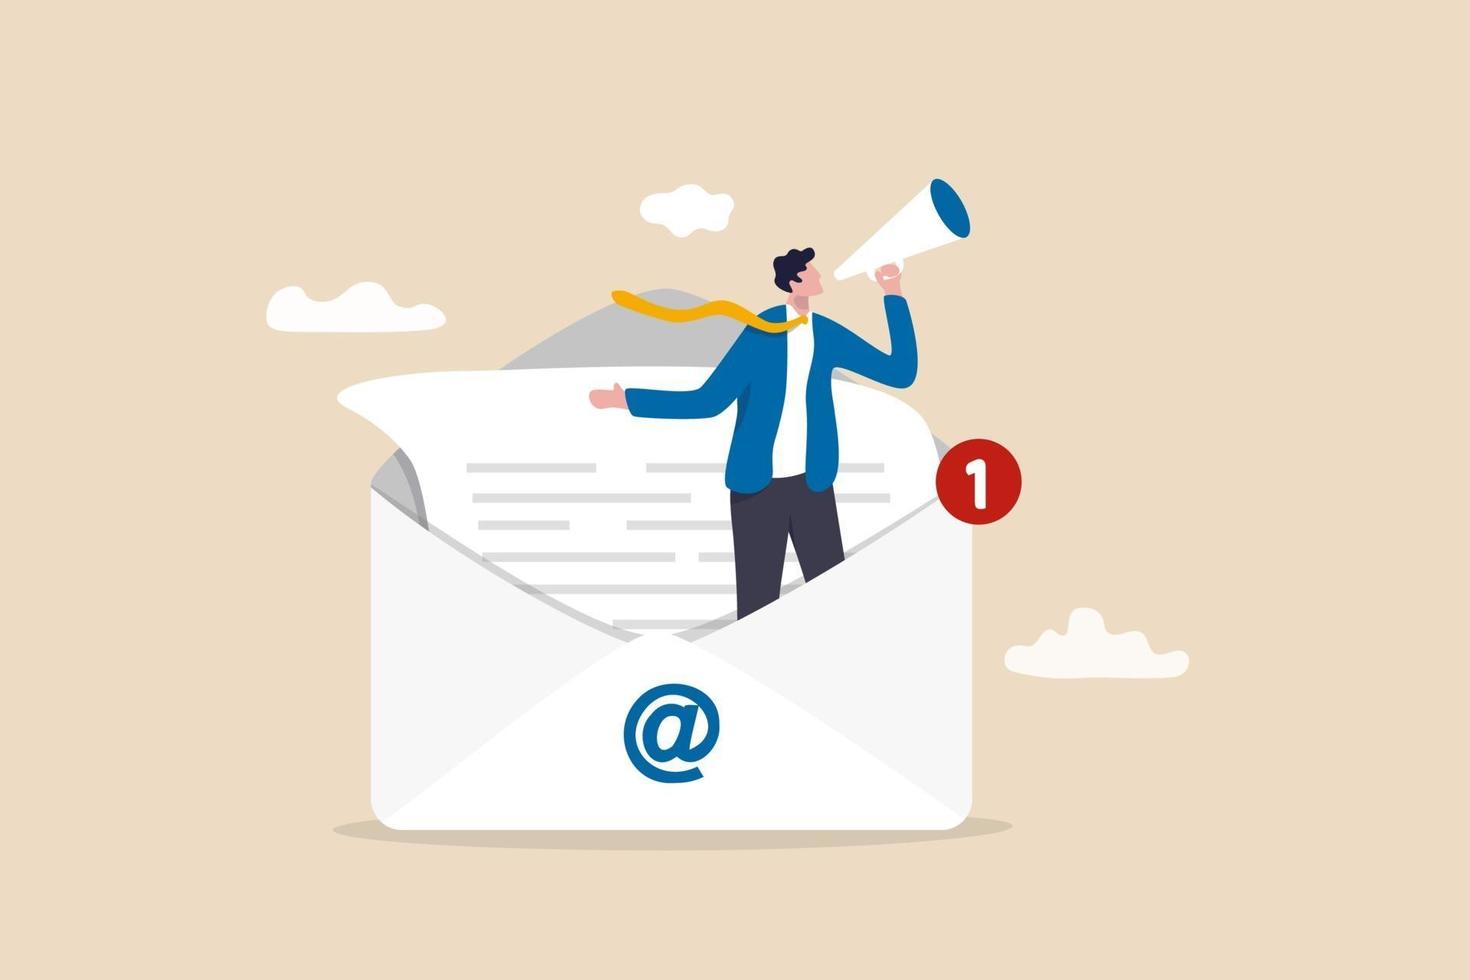 e-mailmarketing, crm, abonnement op het web en het verzenden van een e-mailnieuwsbrief voor informatie over korting of promotie, zakenman die in e-mailenvelop staat en promotie aankondigt via megafoon. vector